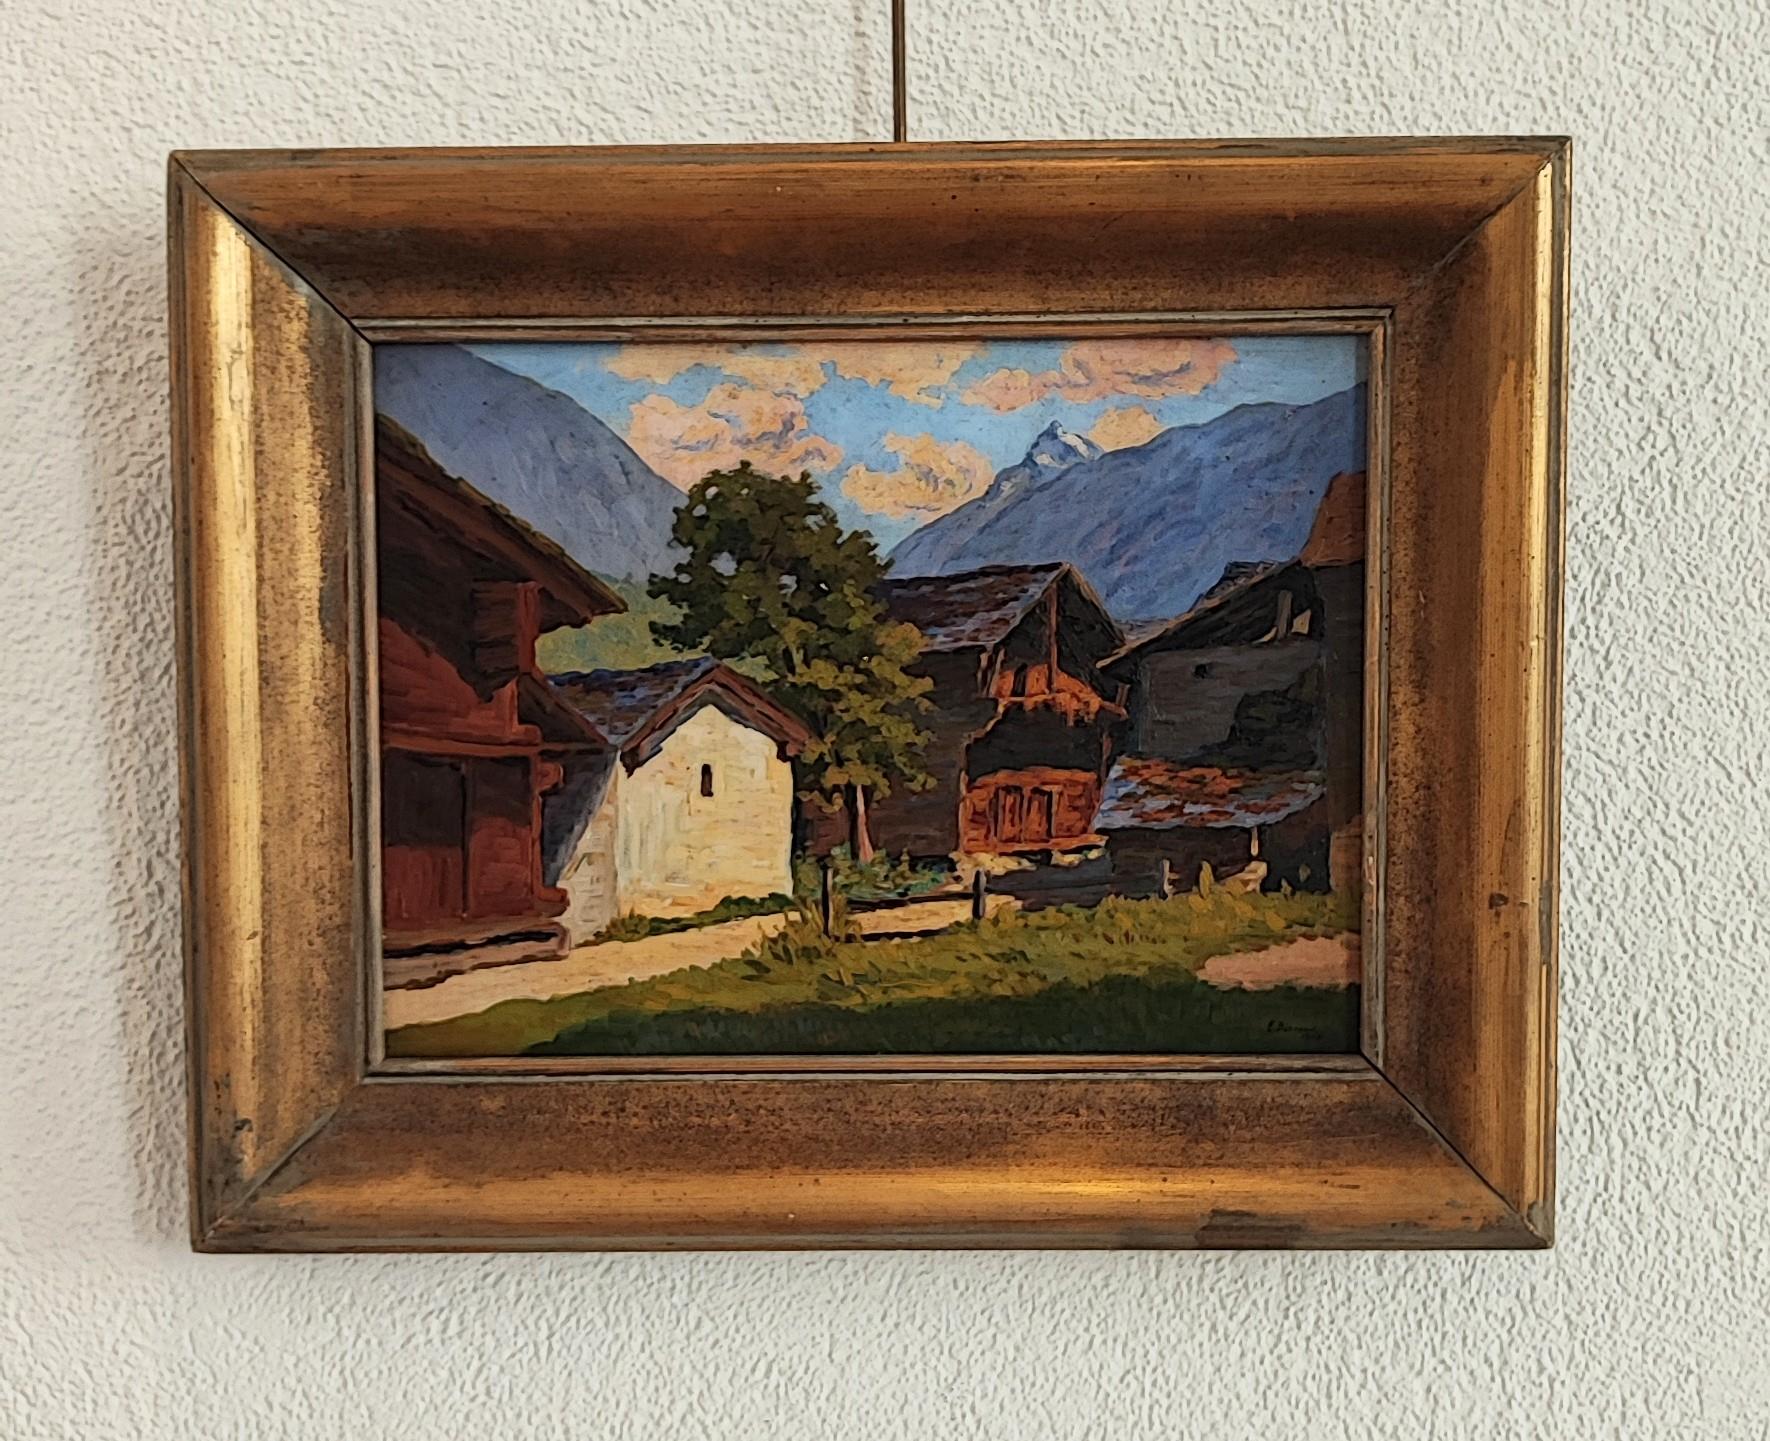 Mazots in Zermatt, Switzerland - Painting by Edmond Bornand